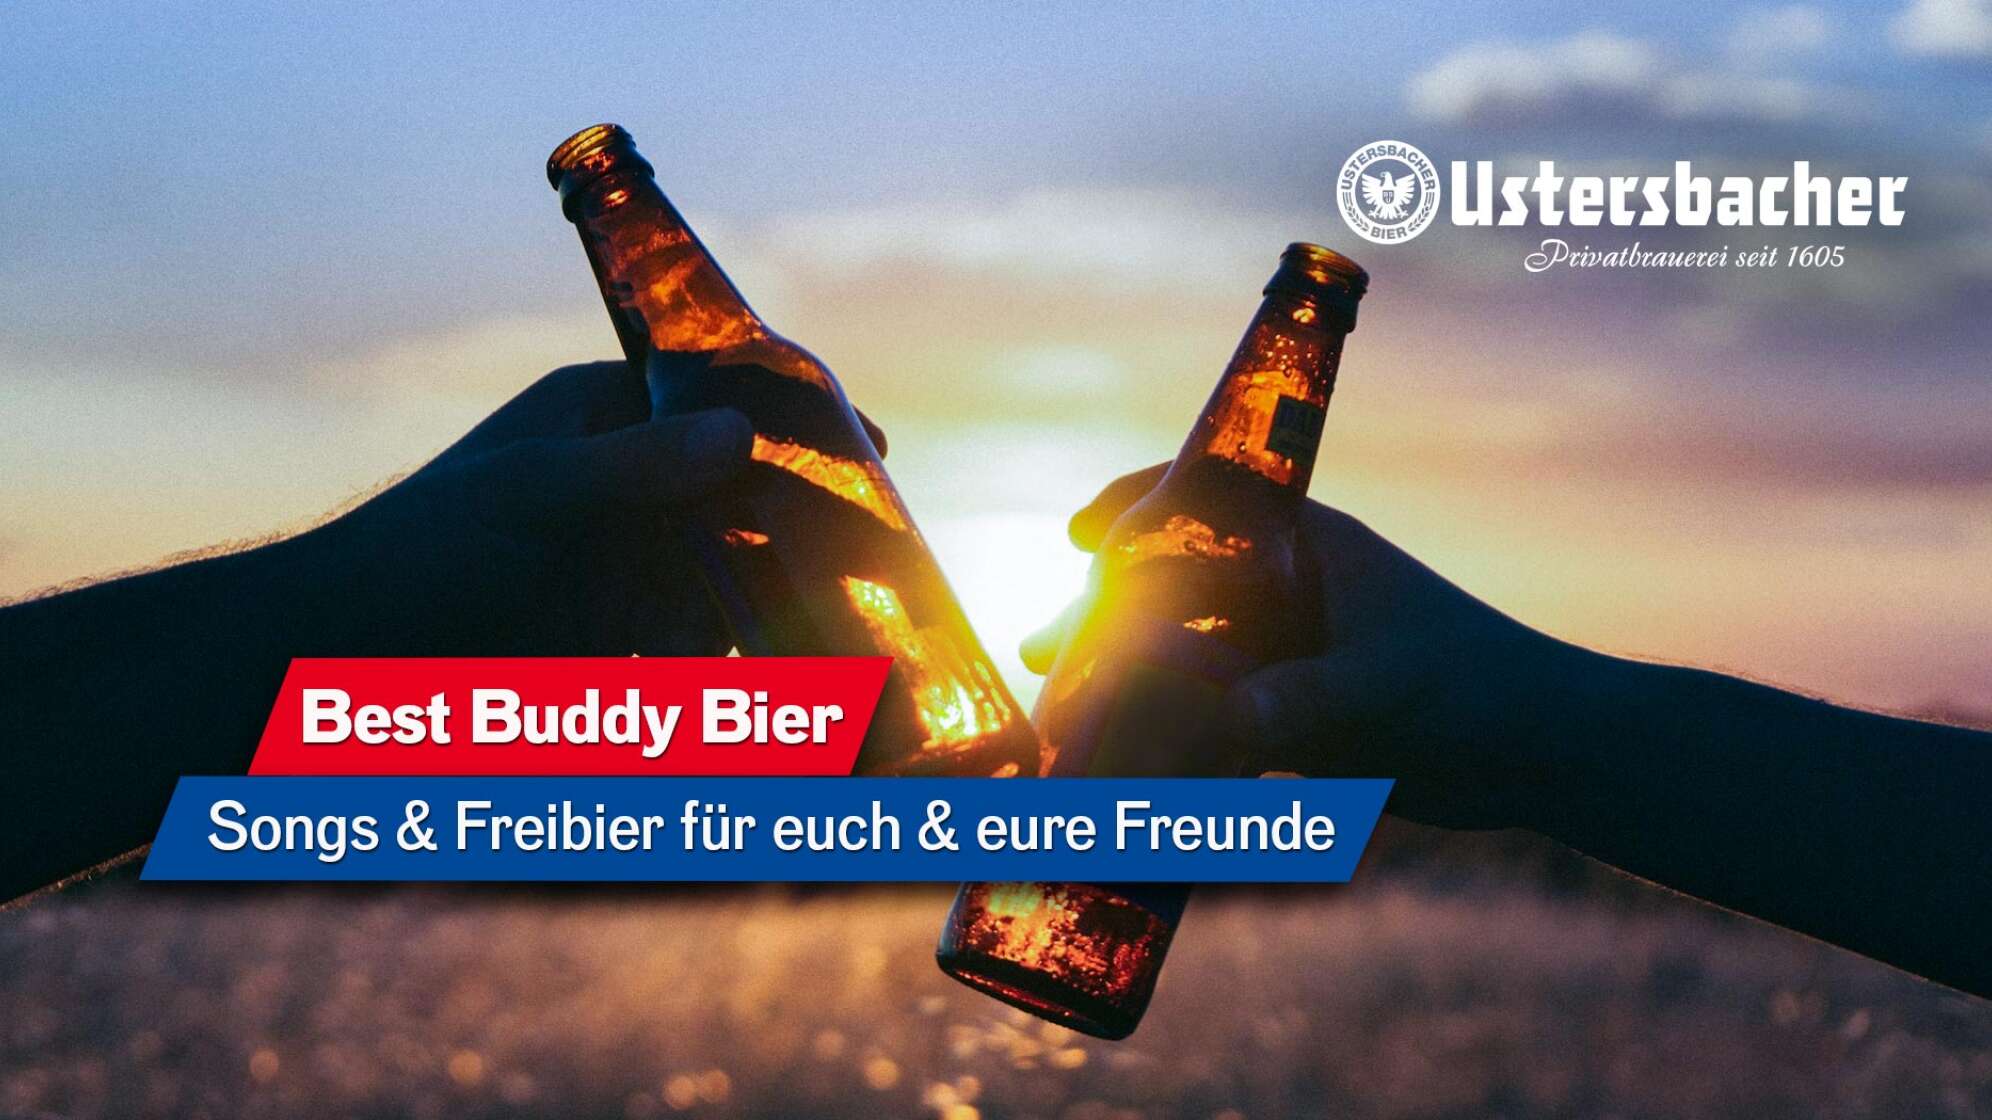 Bildausschnitt, auf dem zwei Menschen mit zwei Flaschen Bier anstoßen, im Hintergrund ist eine Wiese im Sonnenuntergang zu sehen. Text auf dem Bild: "Best Buddy Bier - Songs & Freibier für euch und eure Freunde"